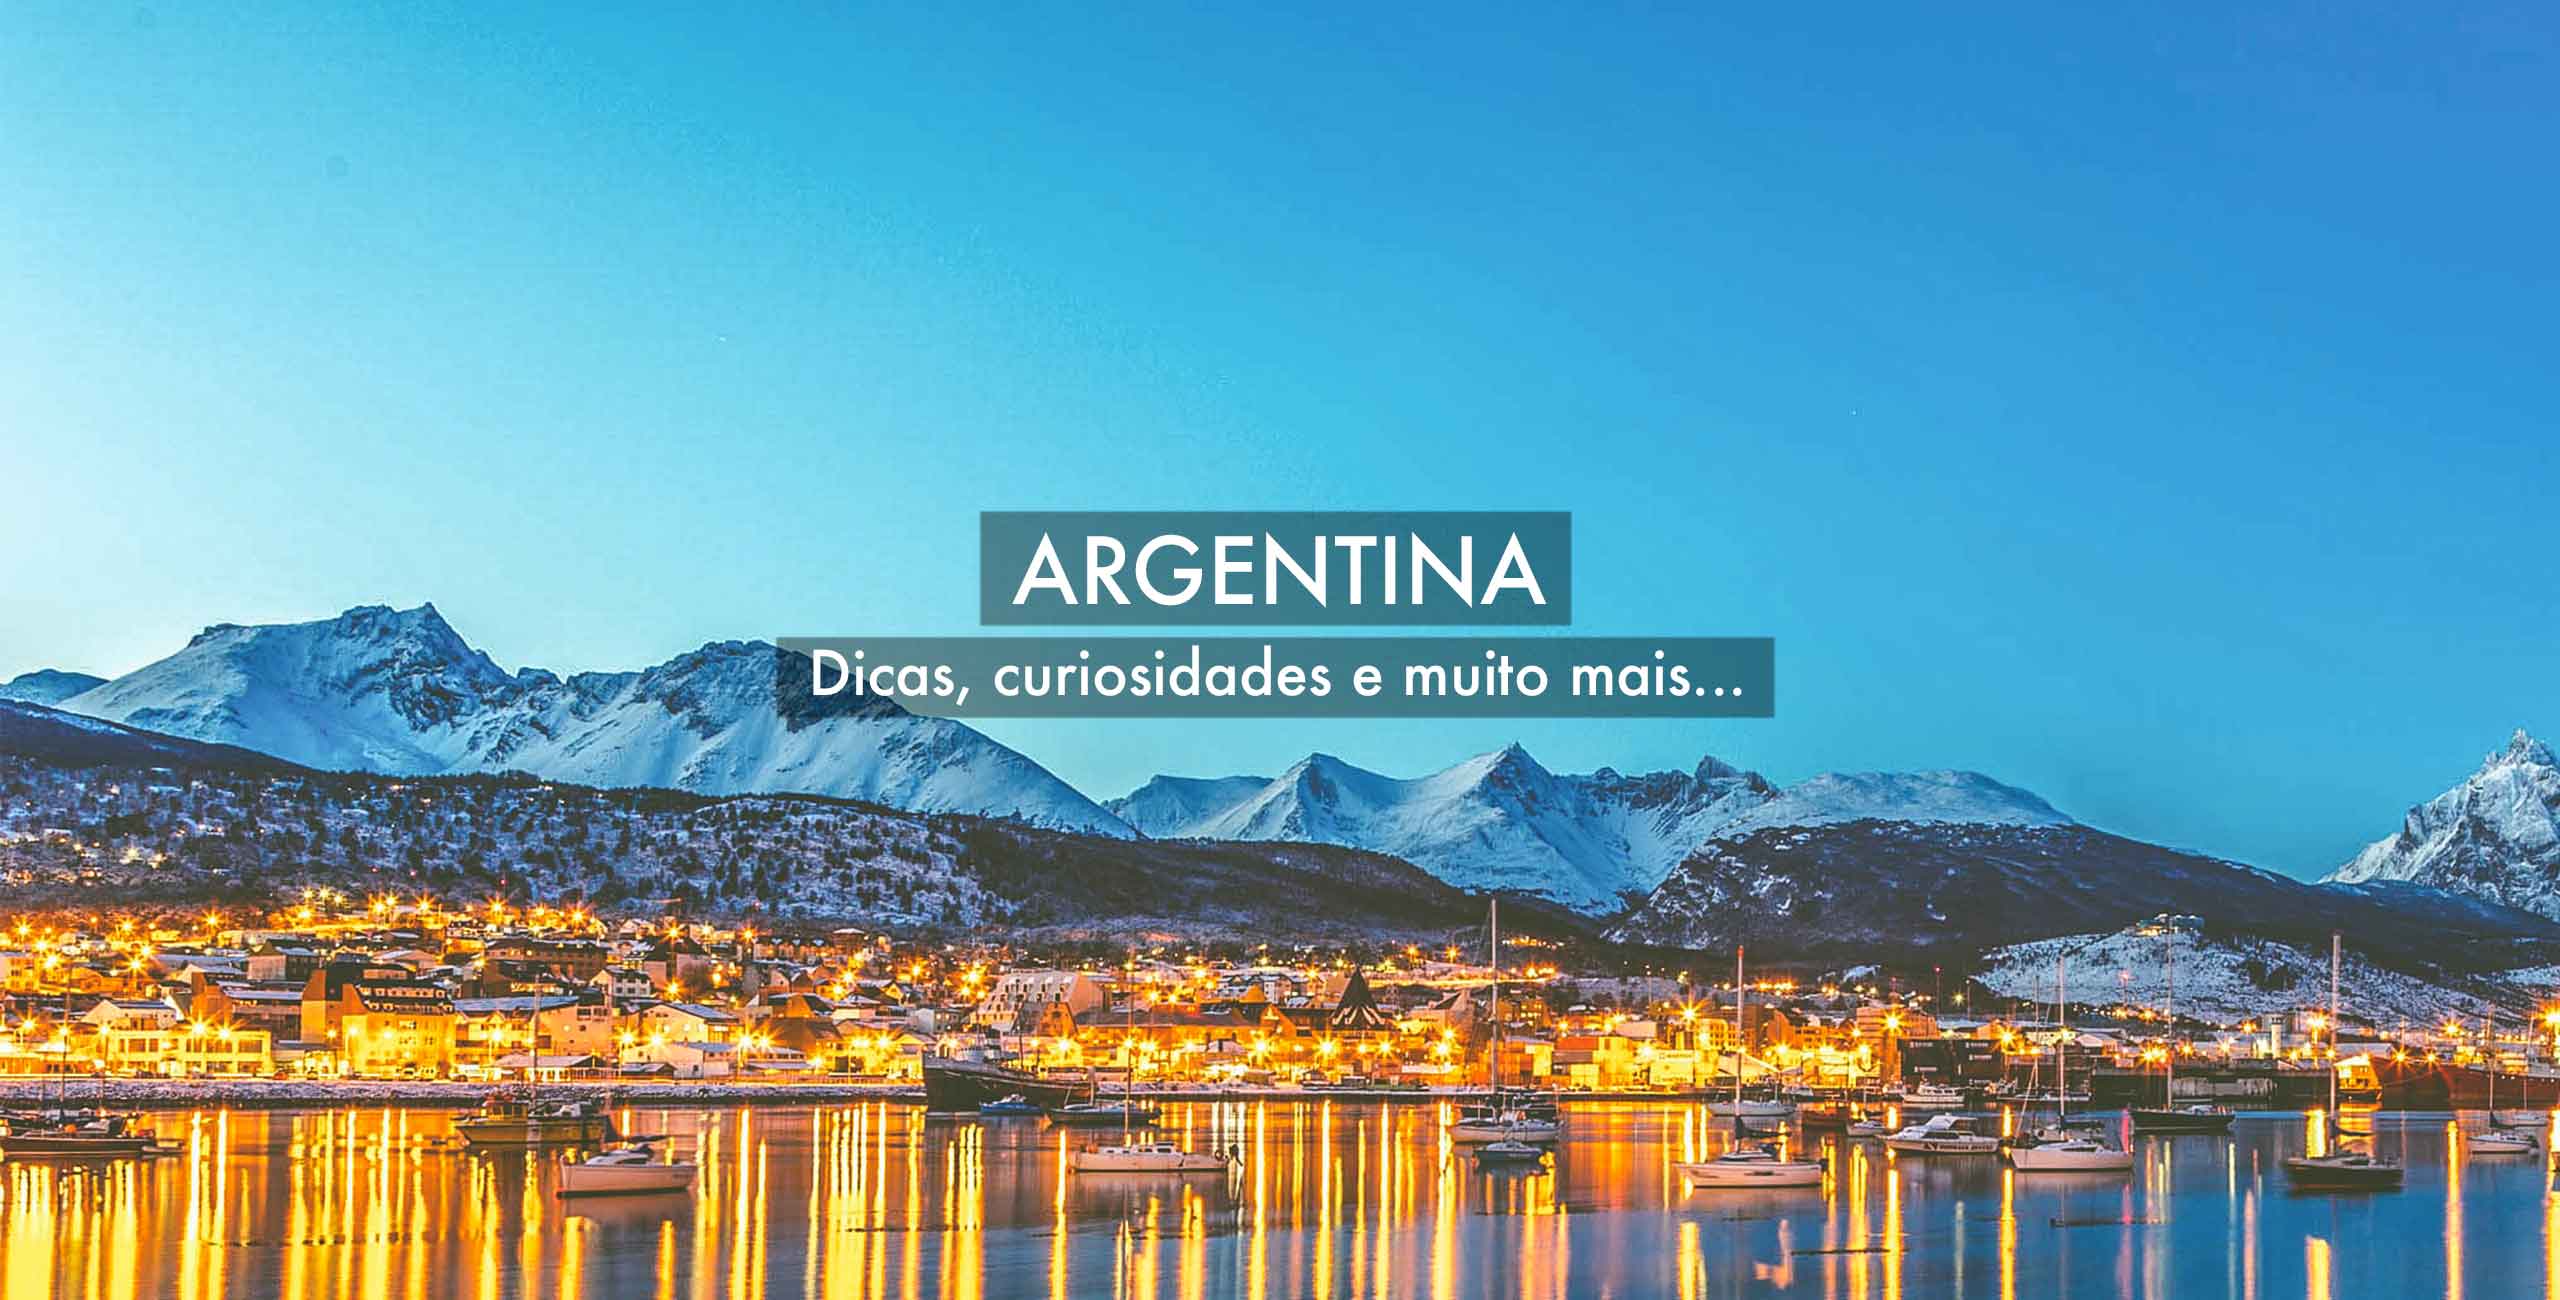 Aluguel de Carro em Ushuaia na Argentina: Todas as dicas - 2021